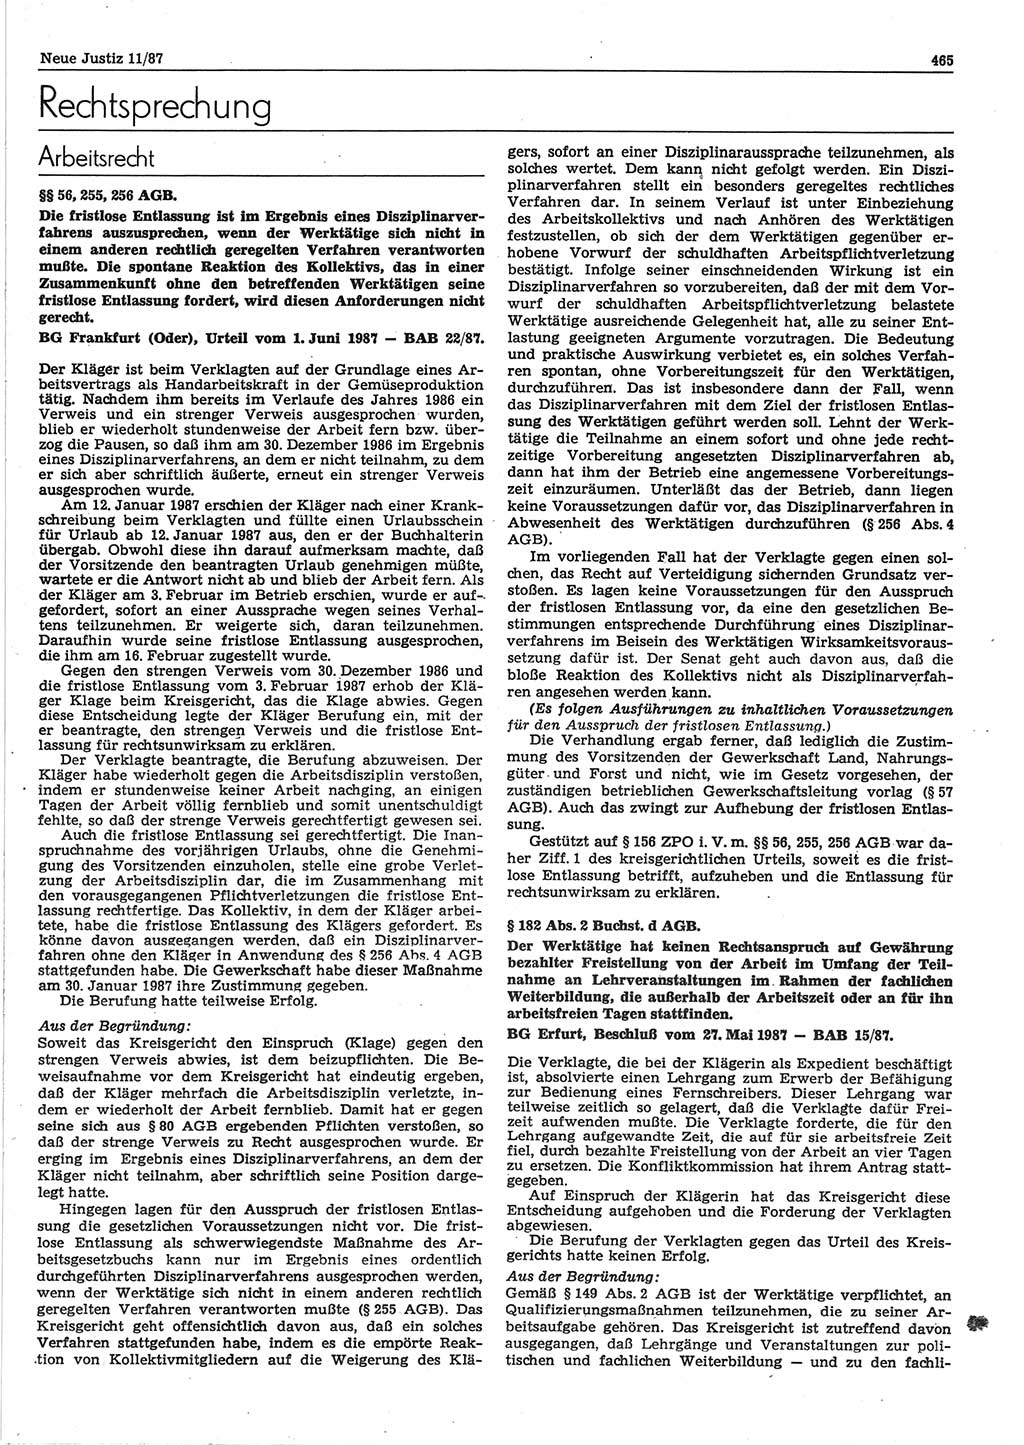 Neue Justiz (NJ), Zeitschrift für sozialistisches Recht und Gesetzlichkeit [Deutsche Demokratische Republik (DDR)], 41. Jahrgang 1987, Seite 465 (NJ DDR 1987, S. 465)